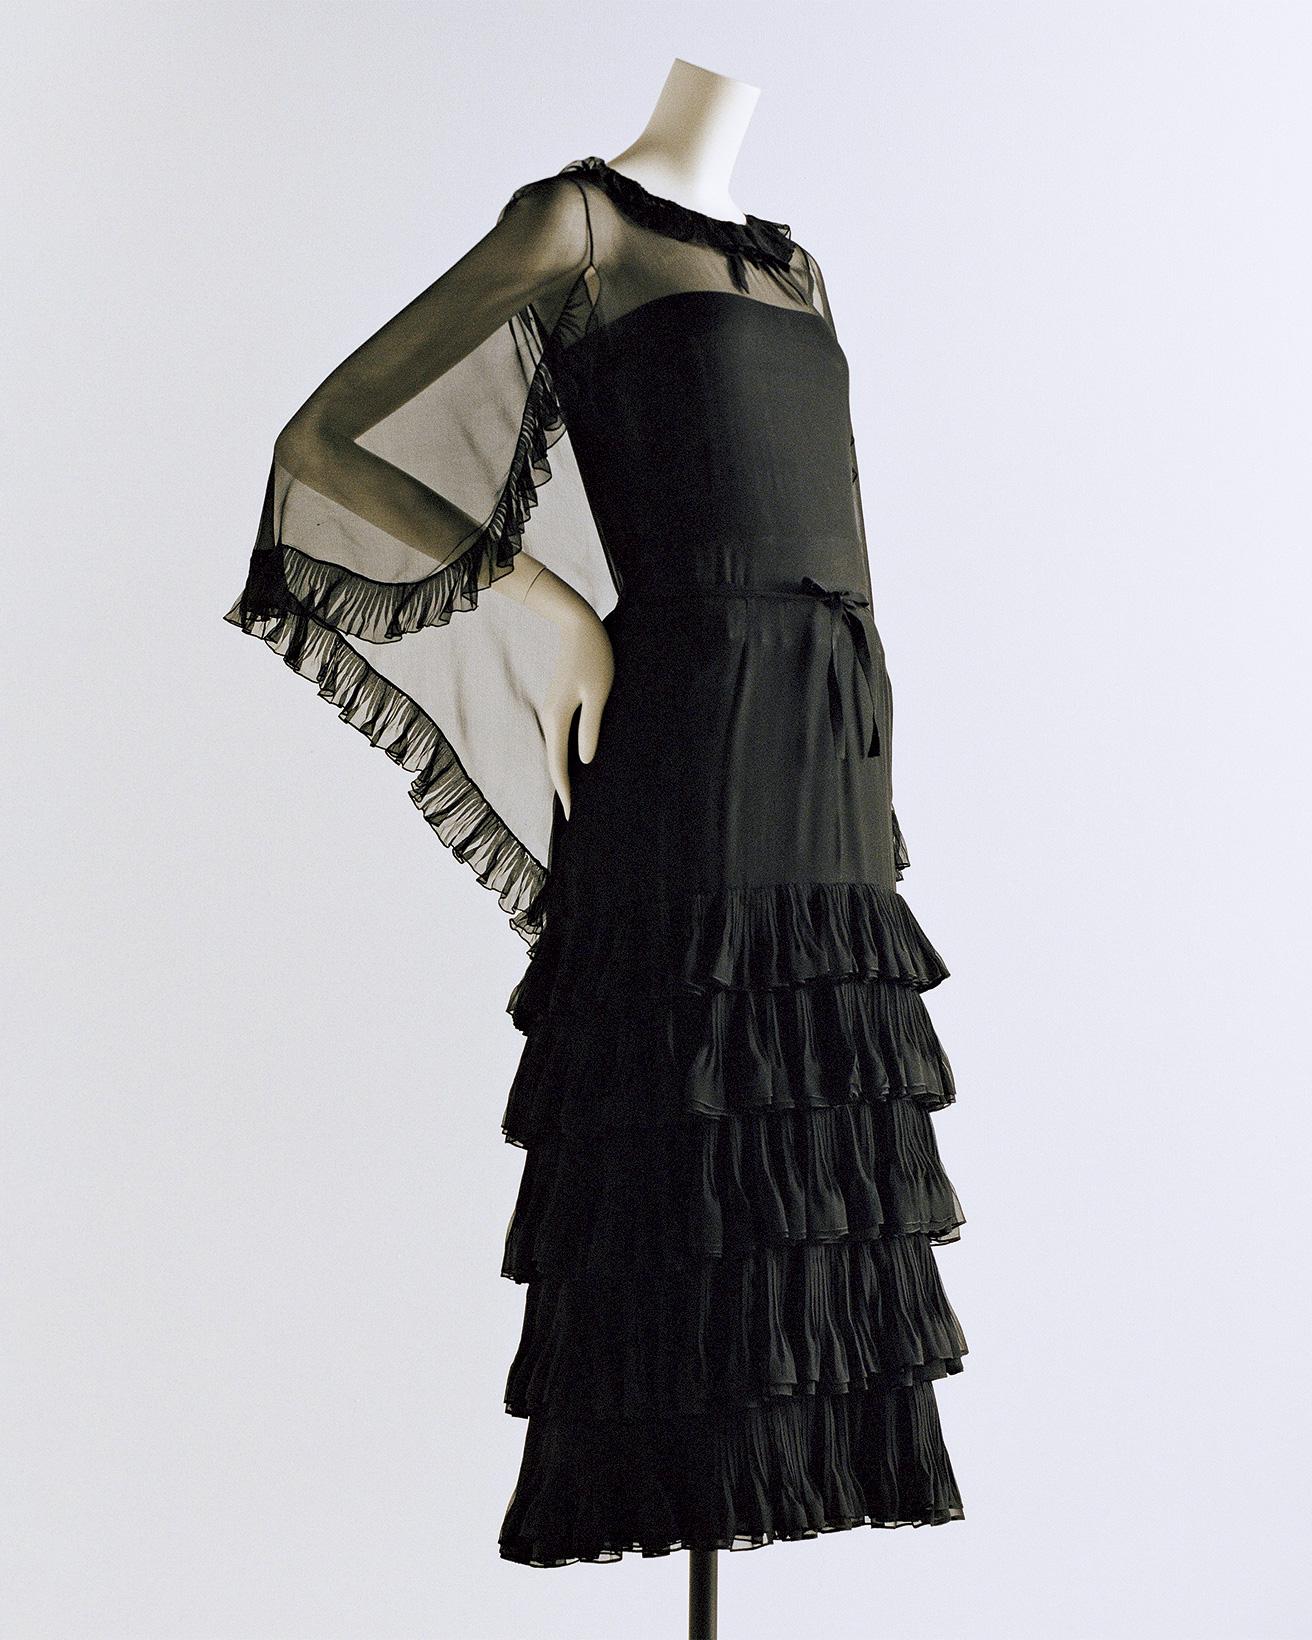 ［1966］黒で統一したドレス1966年の春夏シーズンに発表したドレス。ガブリエル・シャネル 絹モスリン、グログラン。（パリ、パトリモアンヌ・シャネル）